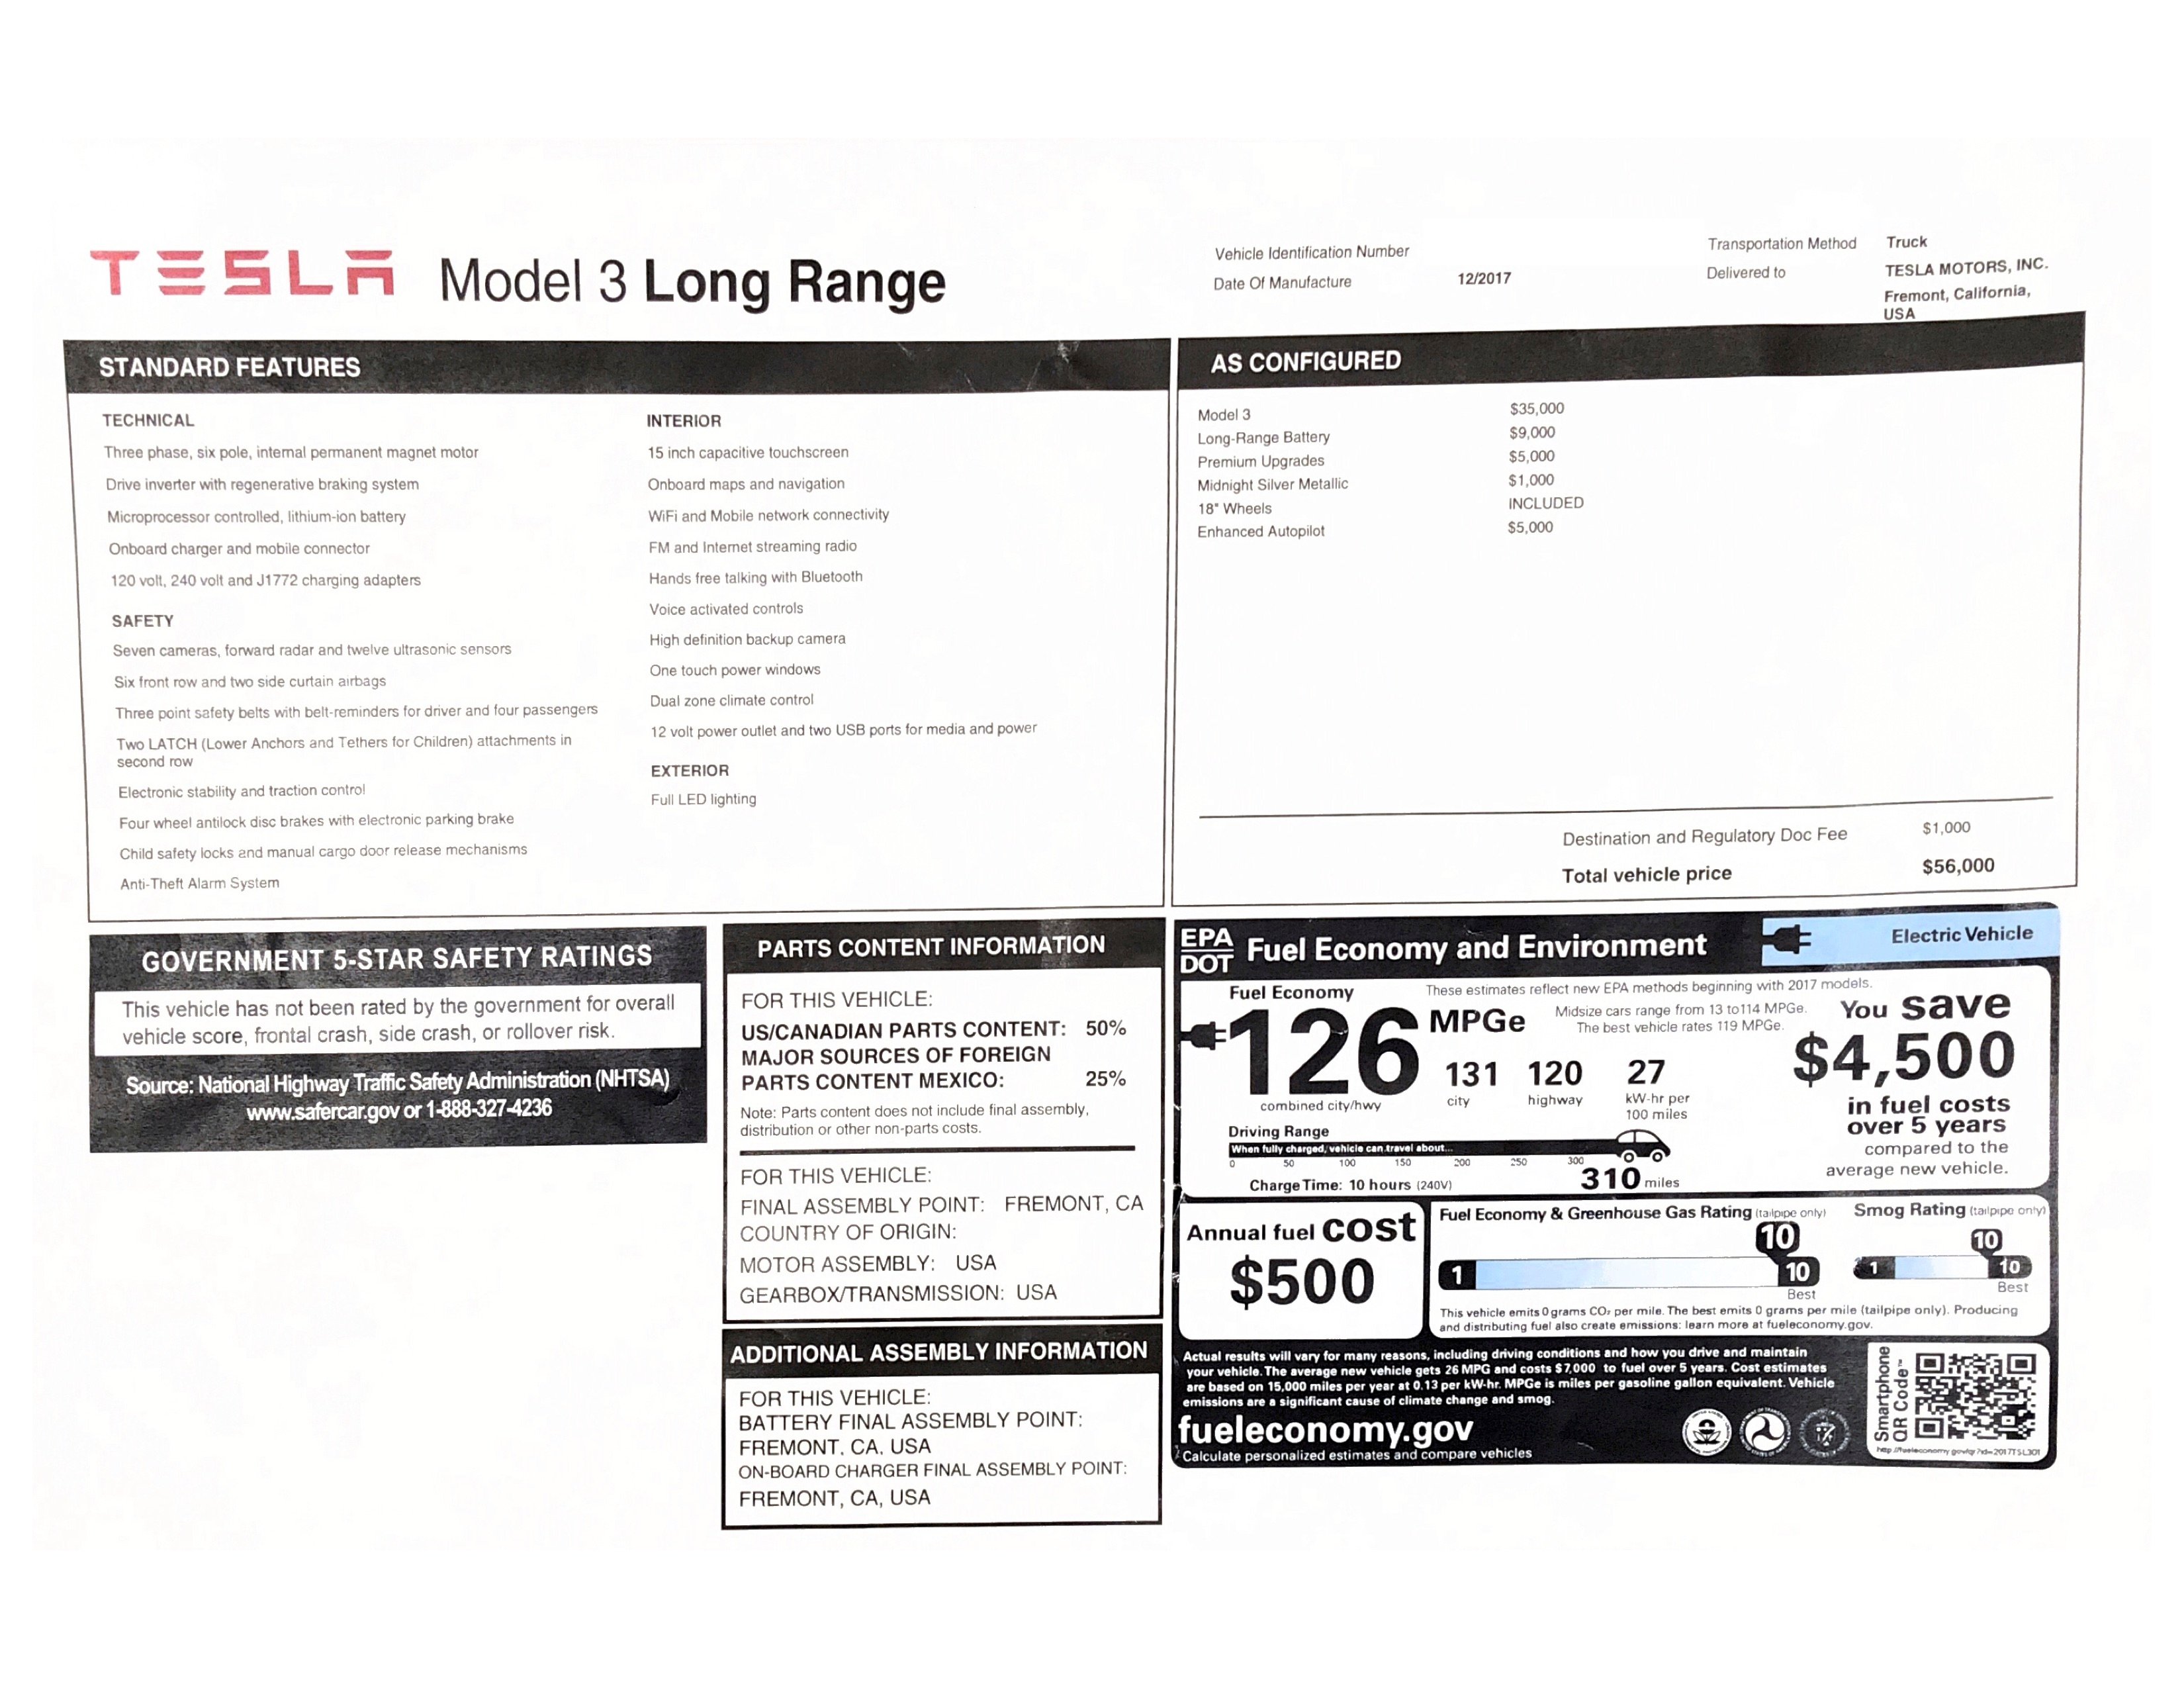 Tesla Model 3 Long Range 2017 Window Sticker